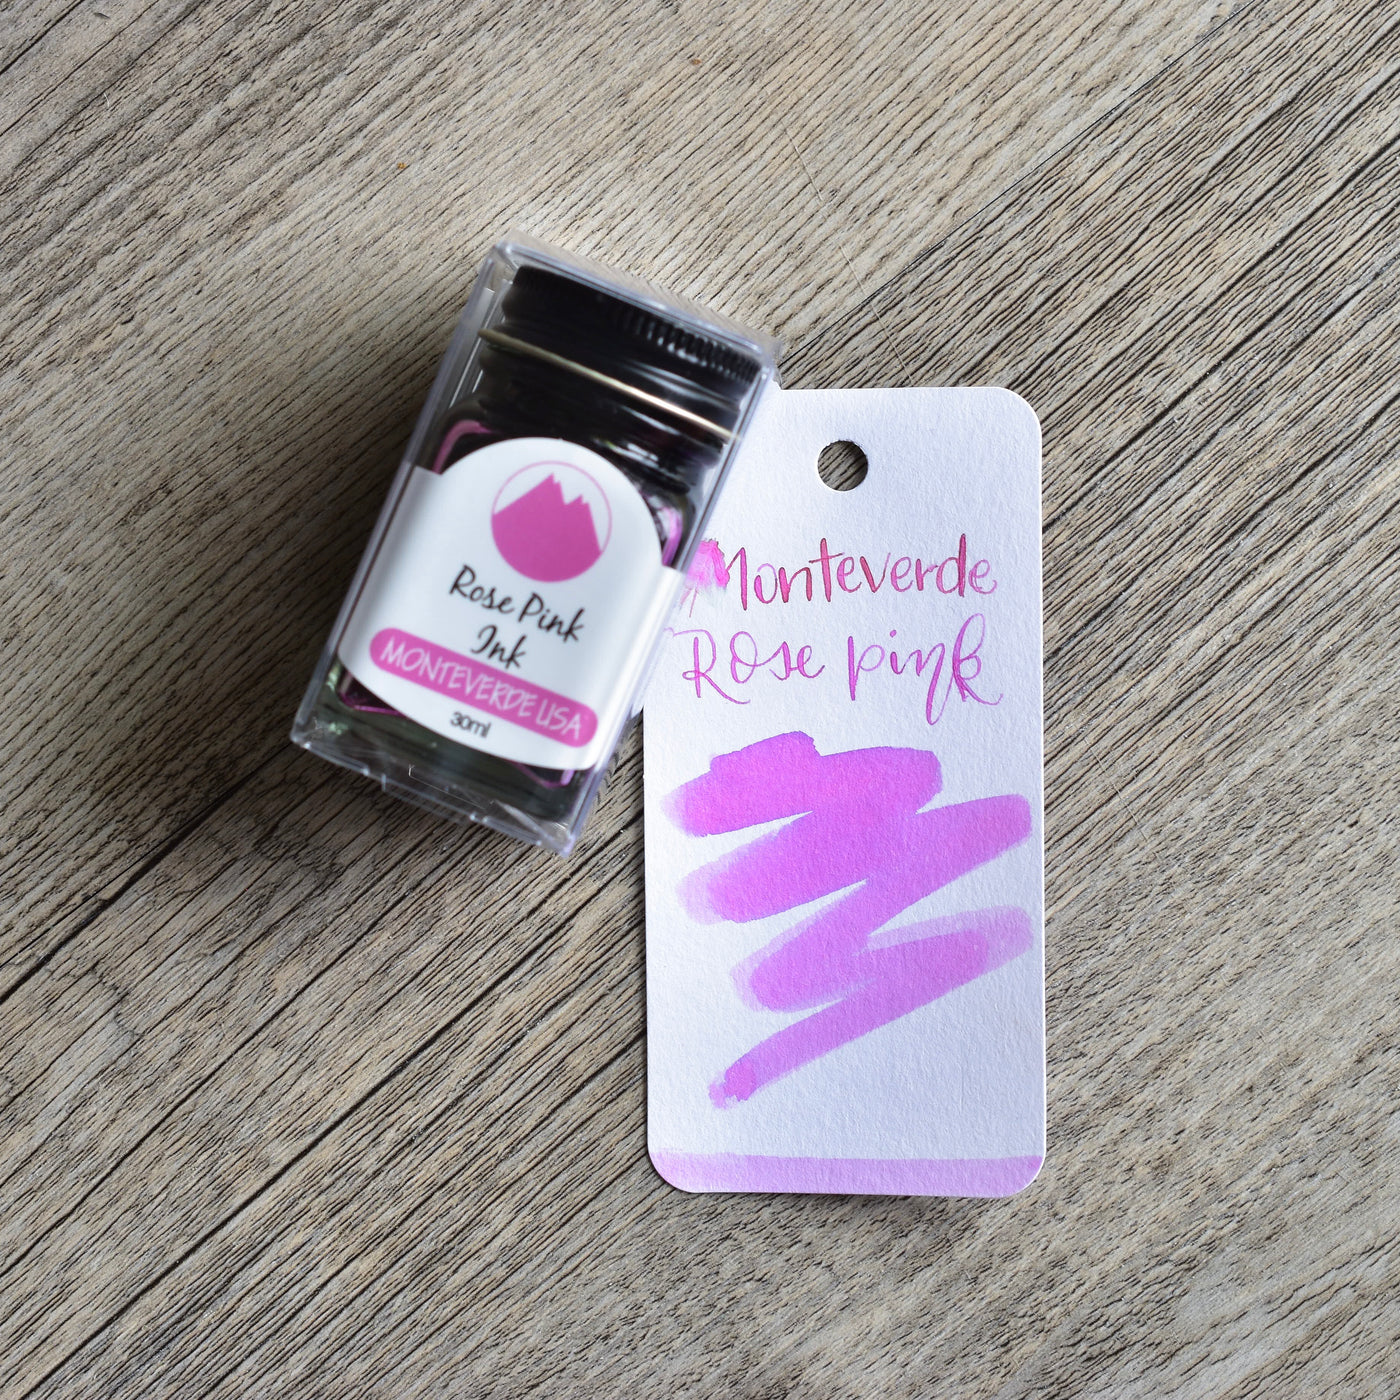 Monteverde Rose Pink Ink Bottle